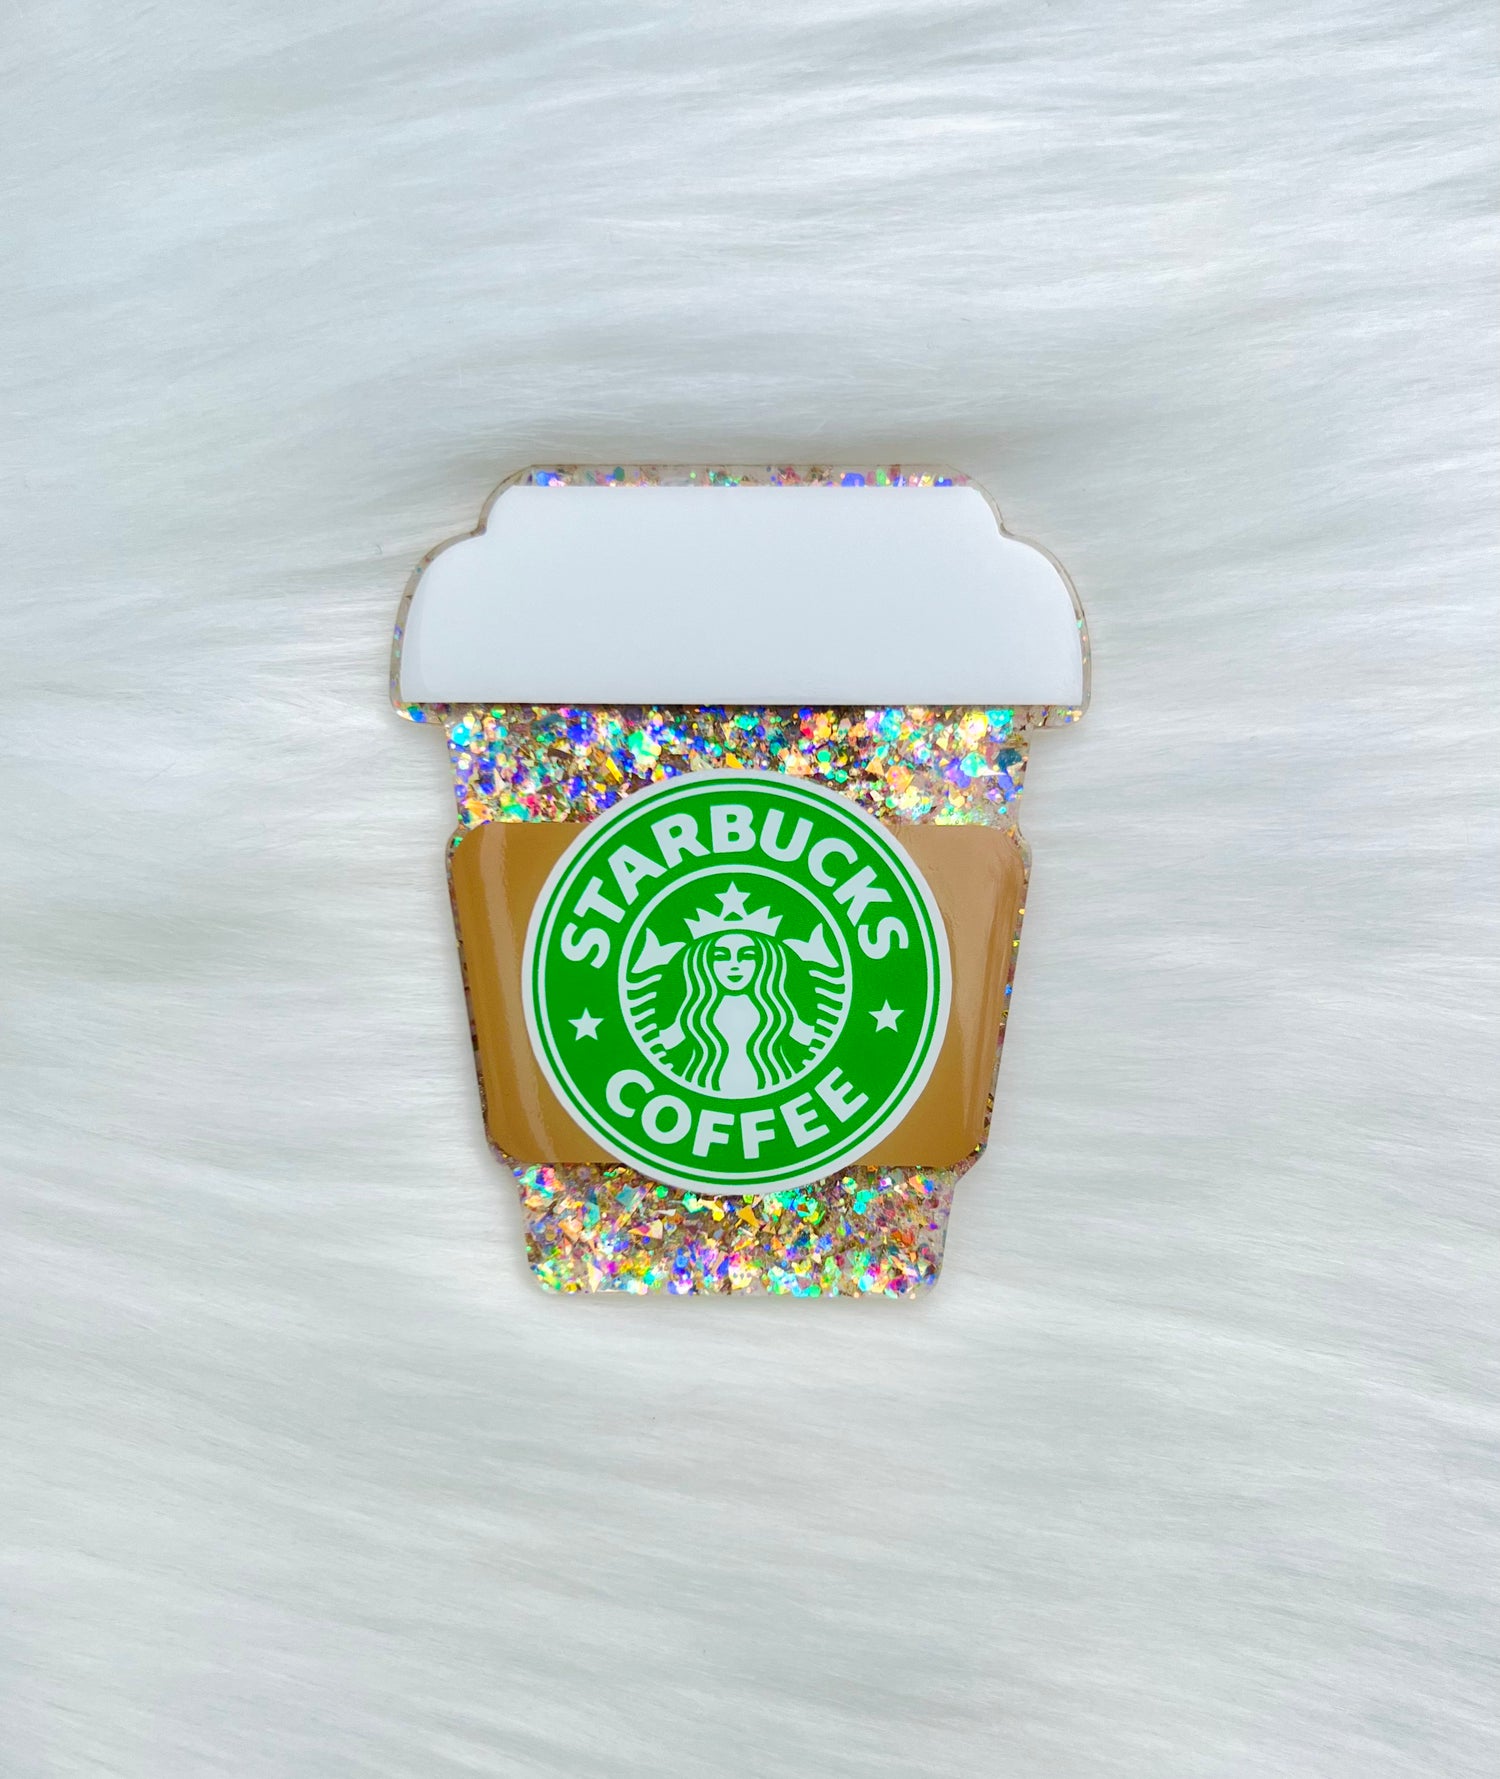 Vật phẩm từ Starbucks có thể làm cho ngày của bạn trở nên tươi sáng hơn. Hãy xem những hình ảnh về nam châm cà phê Starbucks để khám phá những điều tuyệt vời đó.